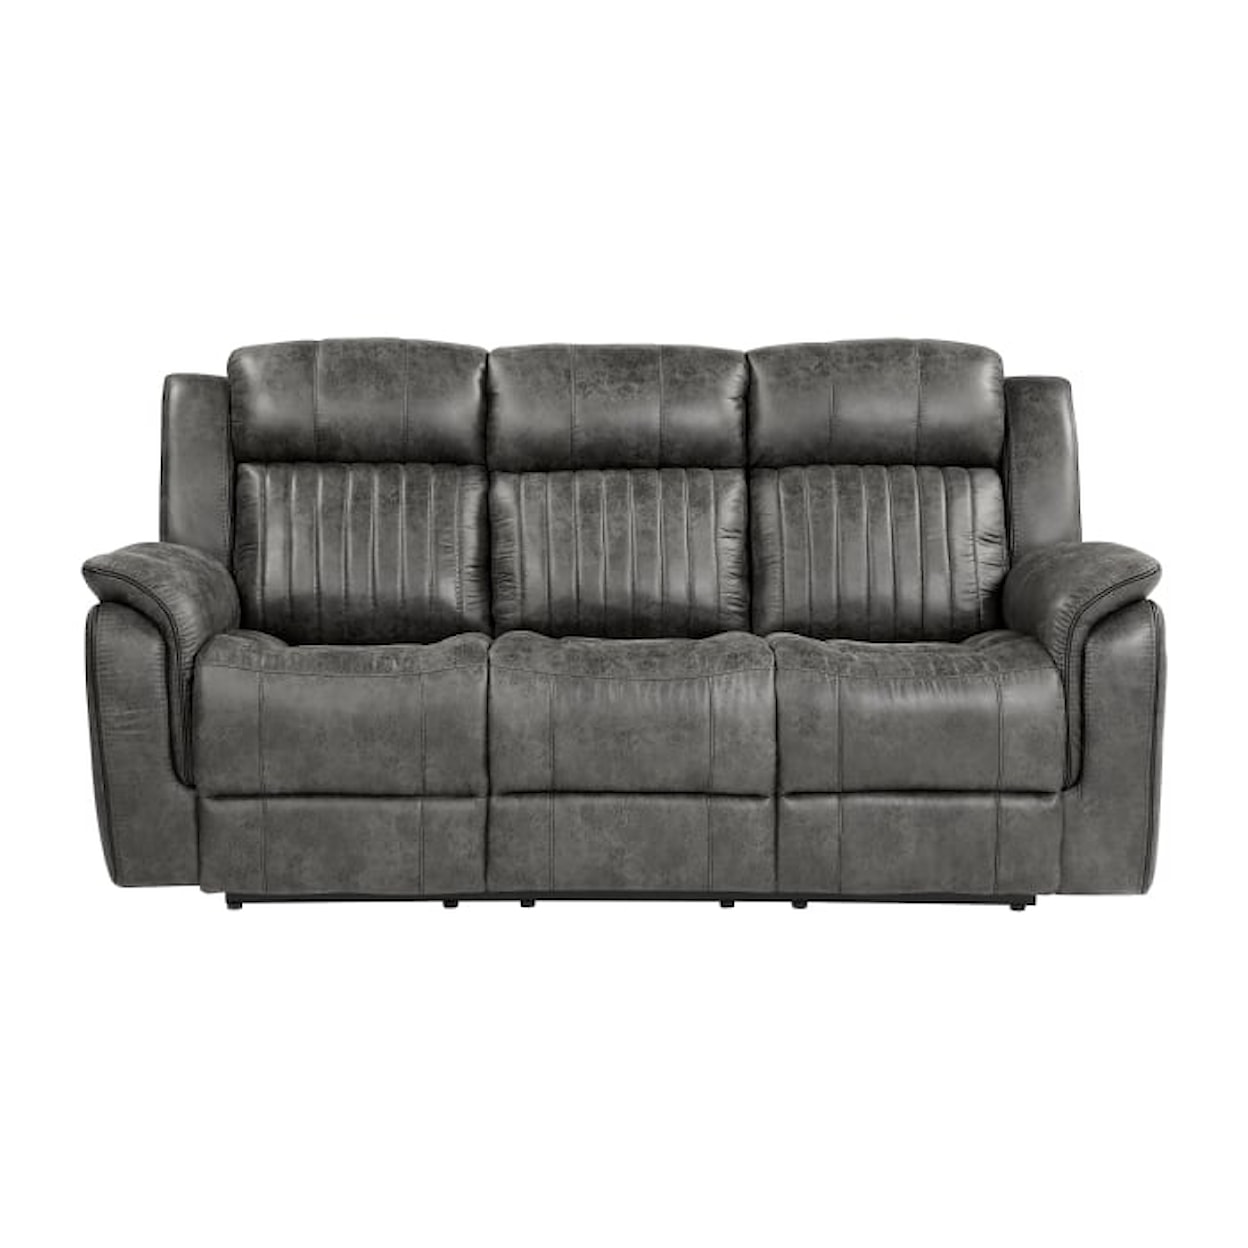 Homelegance Furniture Centeroak Double Reclining Sofa